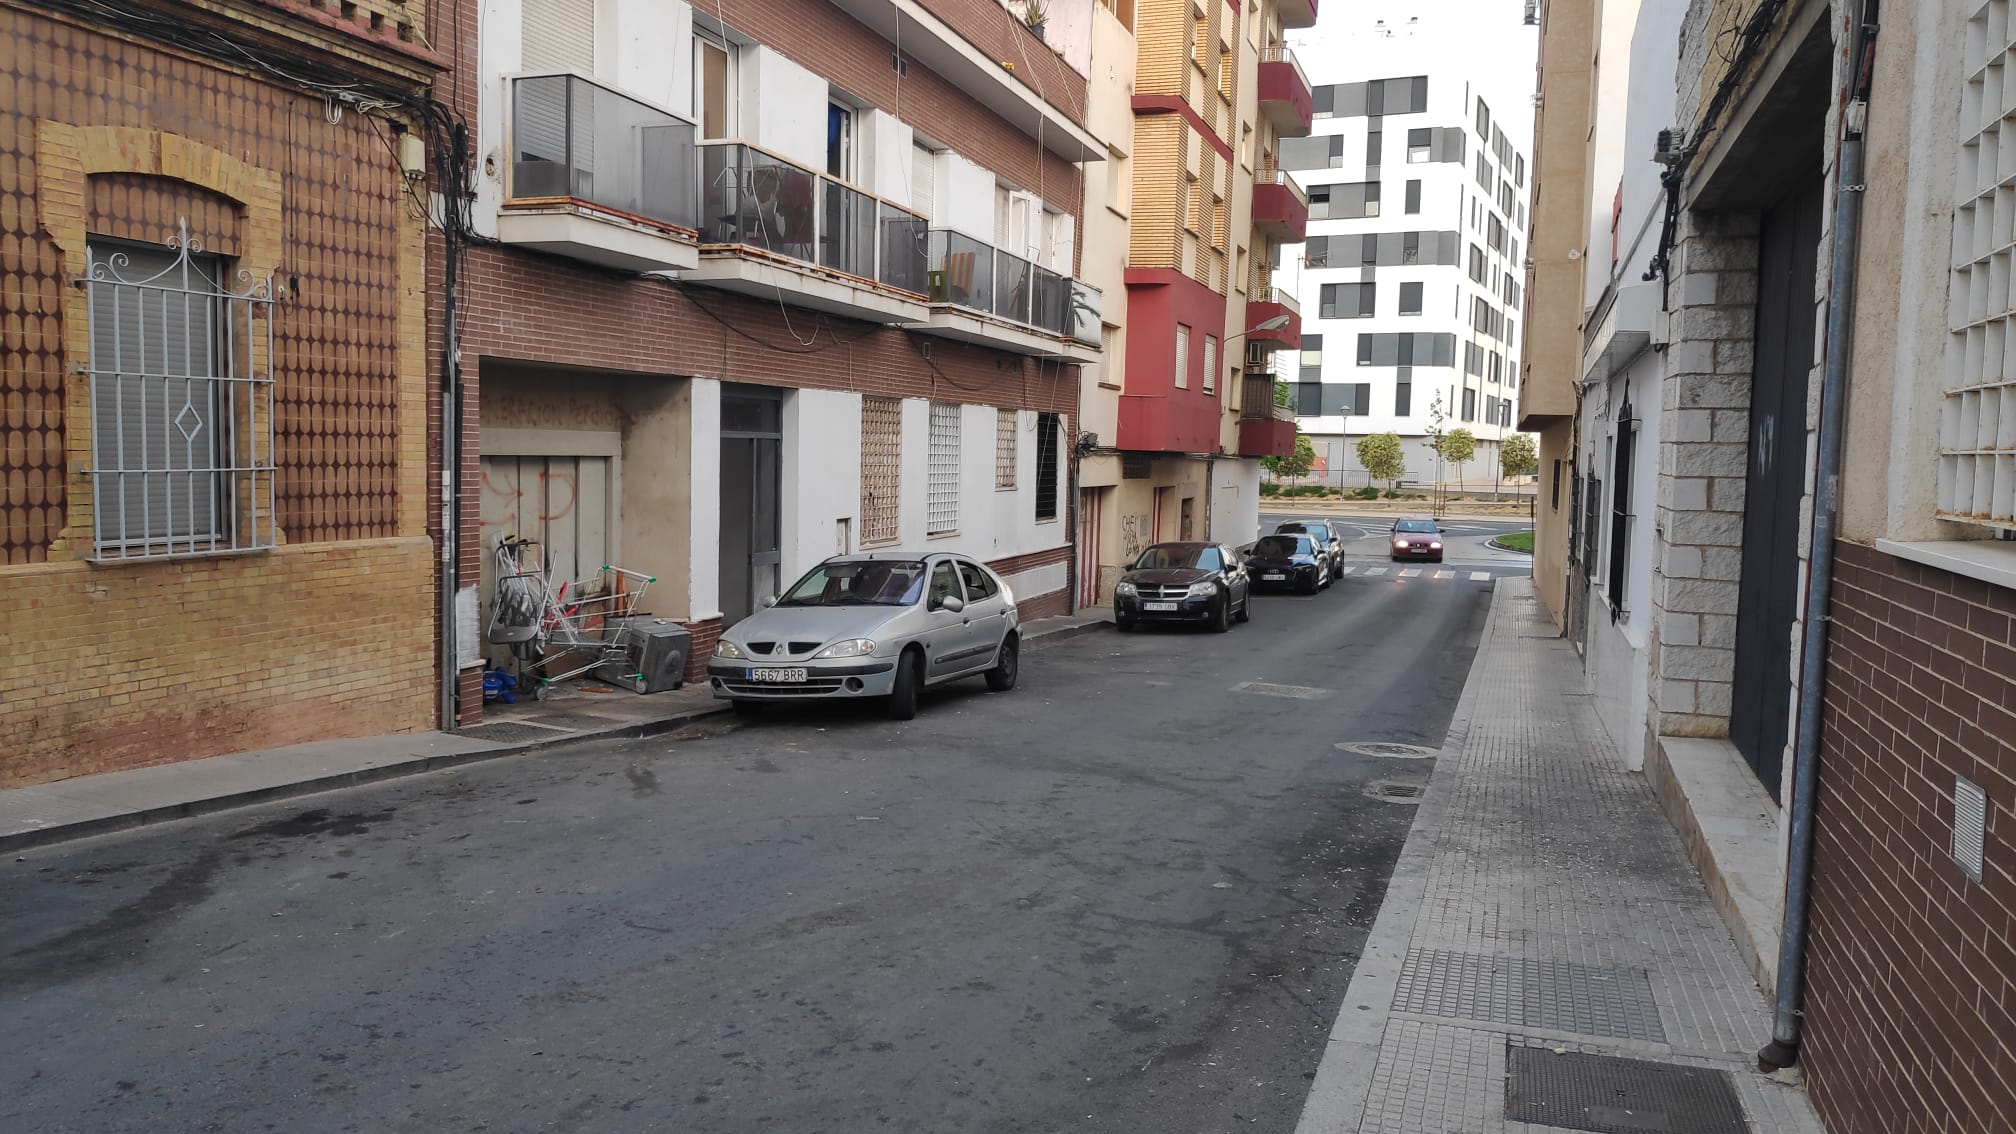 Calle Tharsis en Huelva. AXSÍ